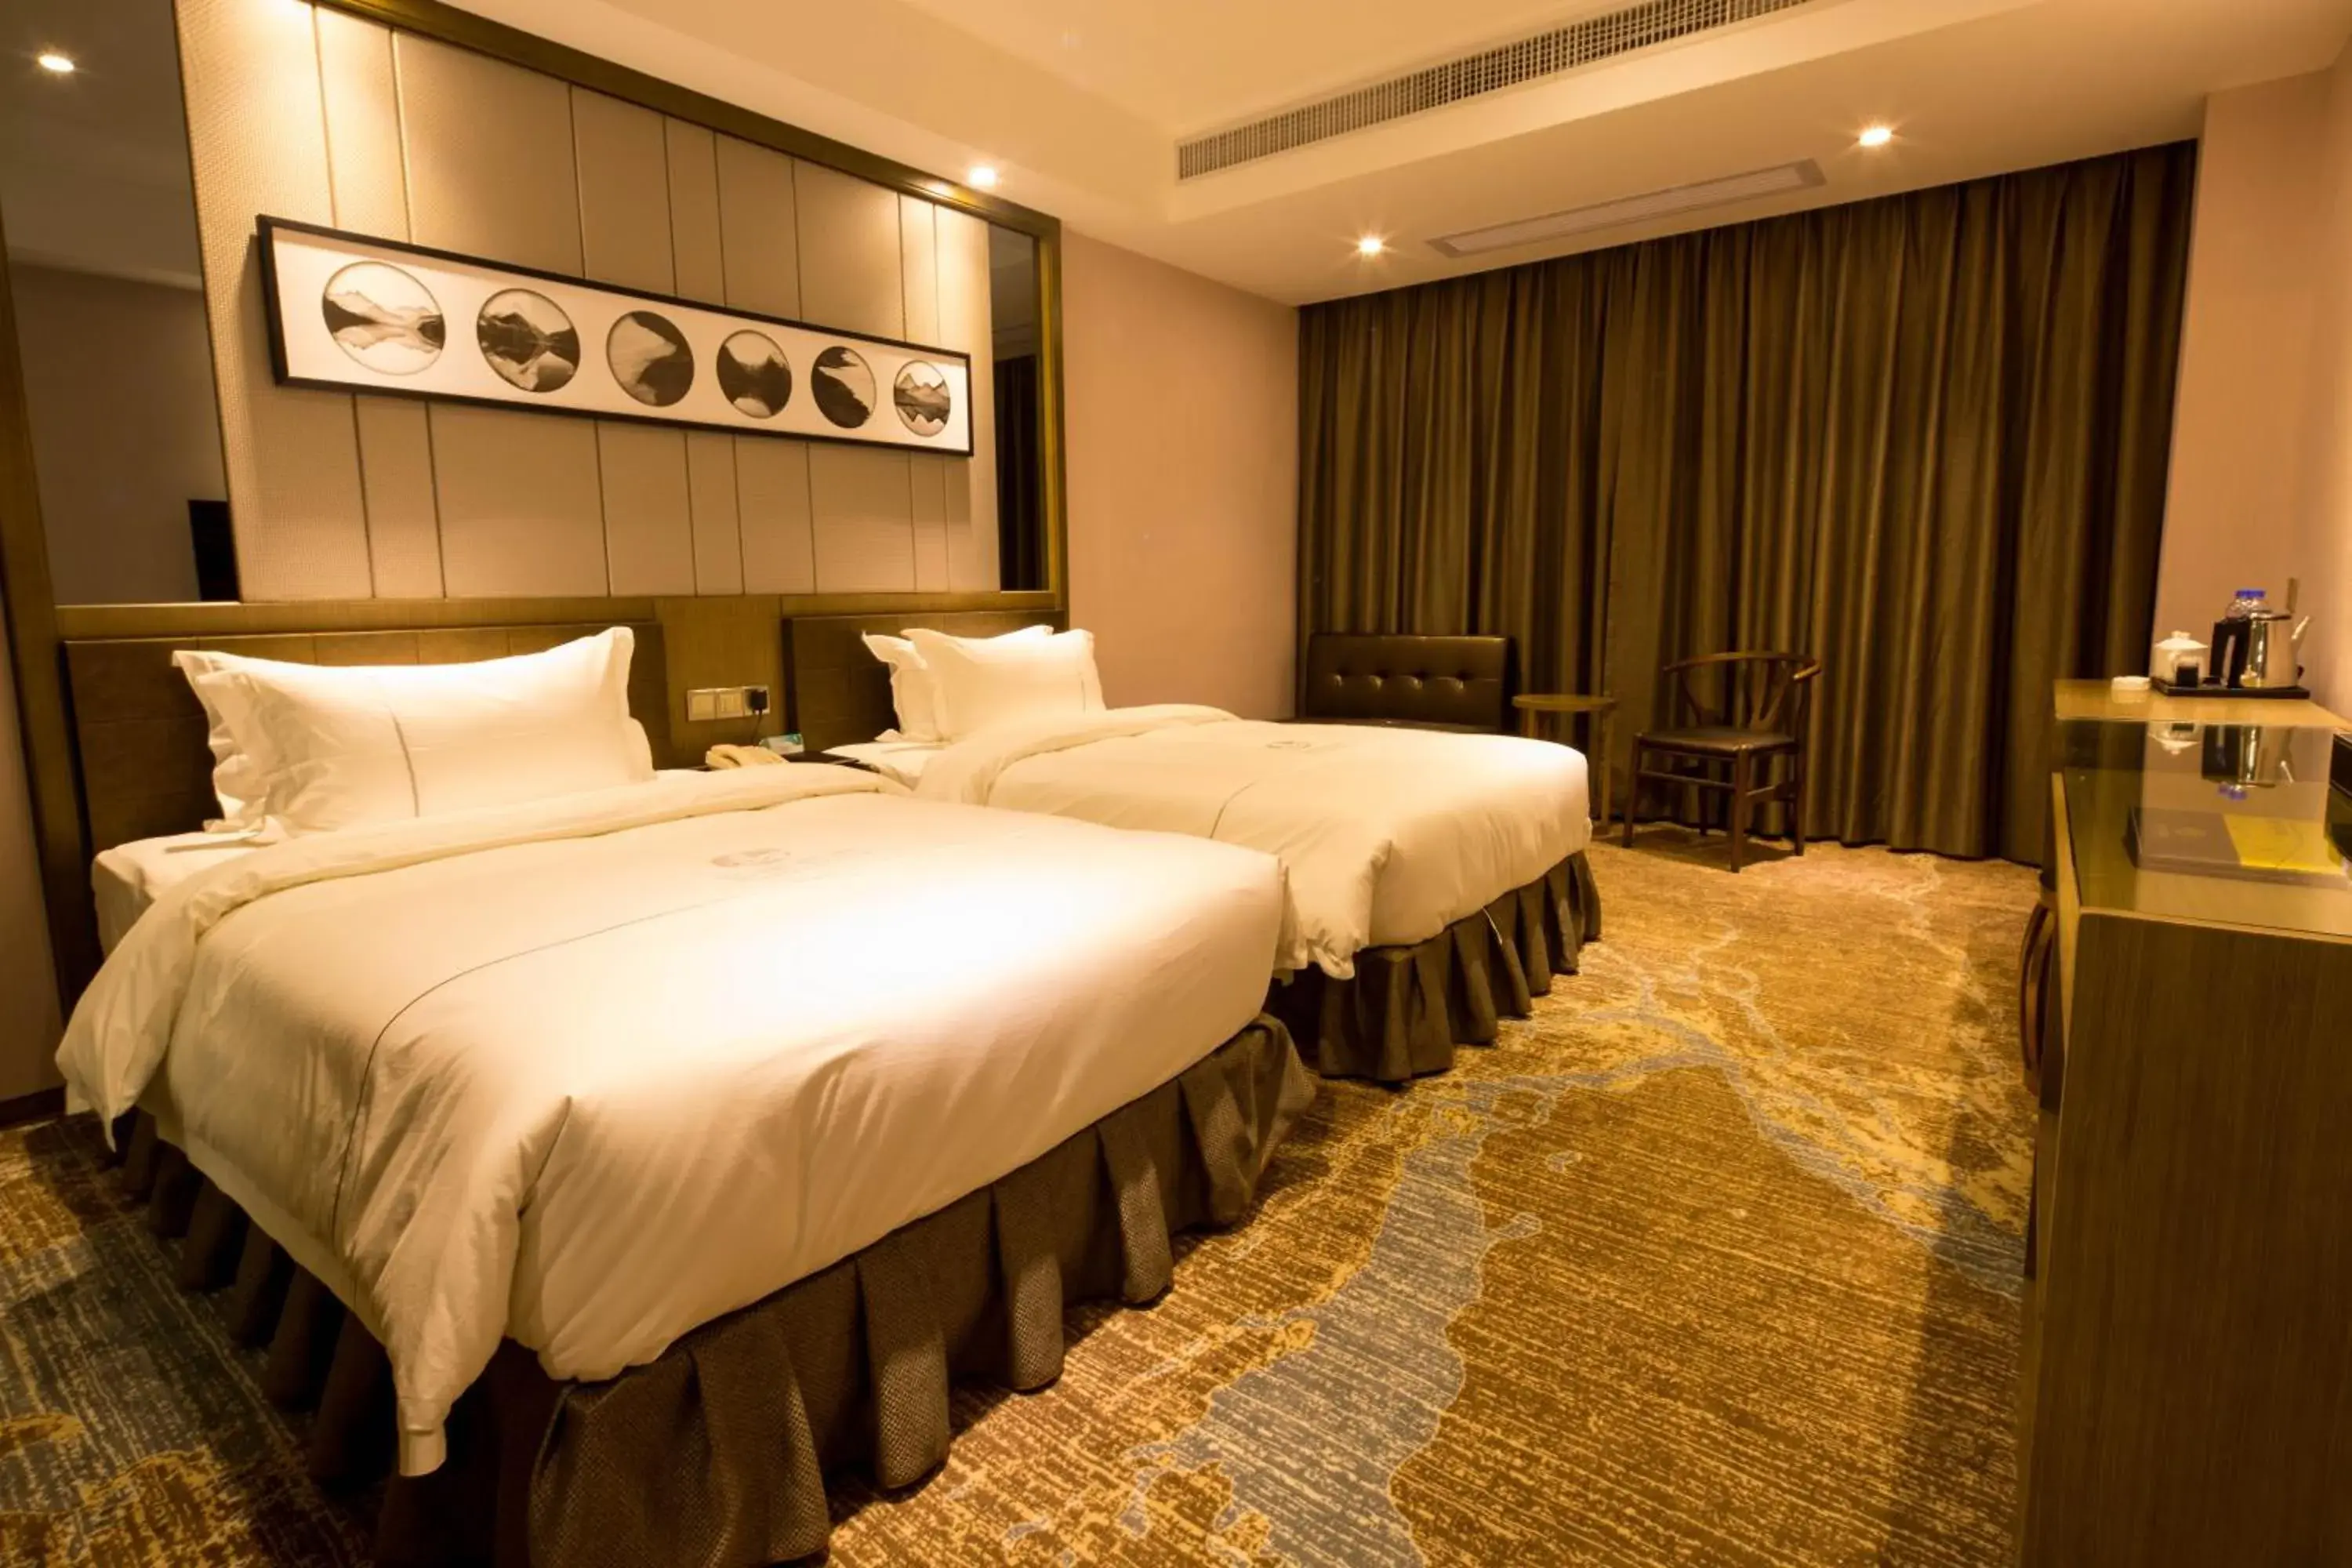 Decorative detail, Bed in INSAIL Hotel (Shenzhen Dongmen Branch)